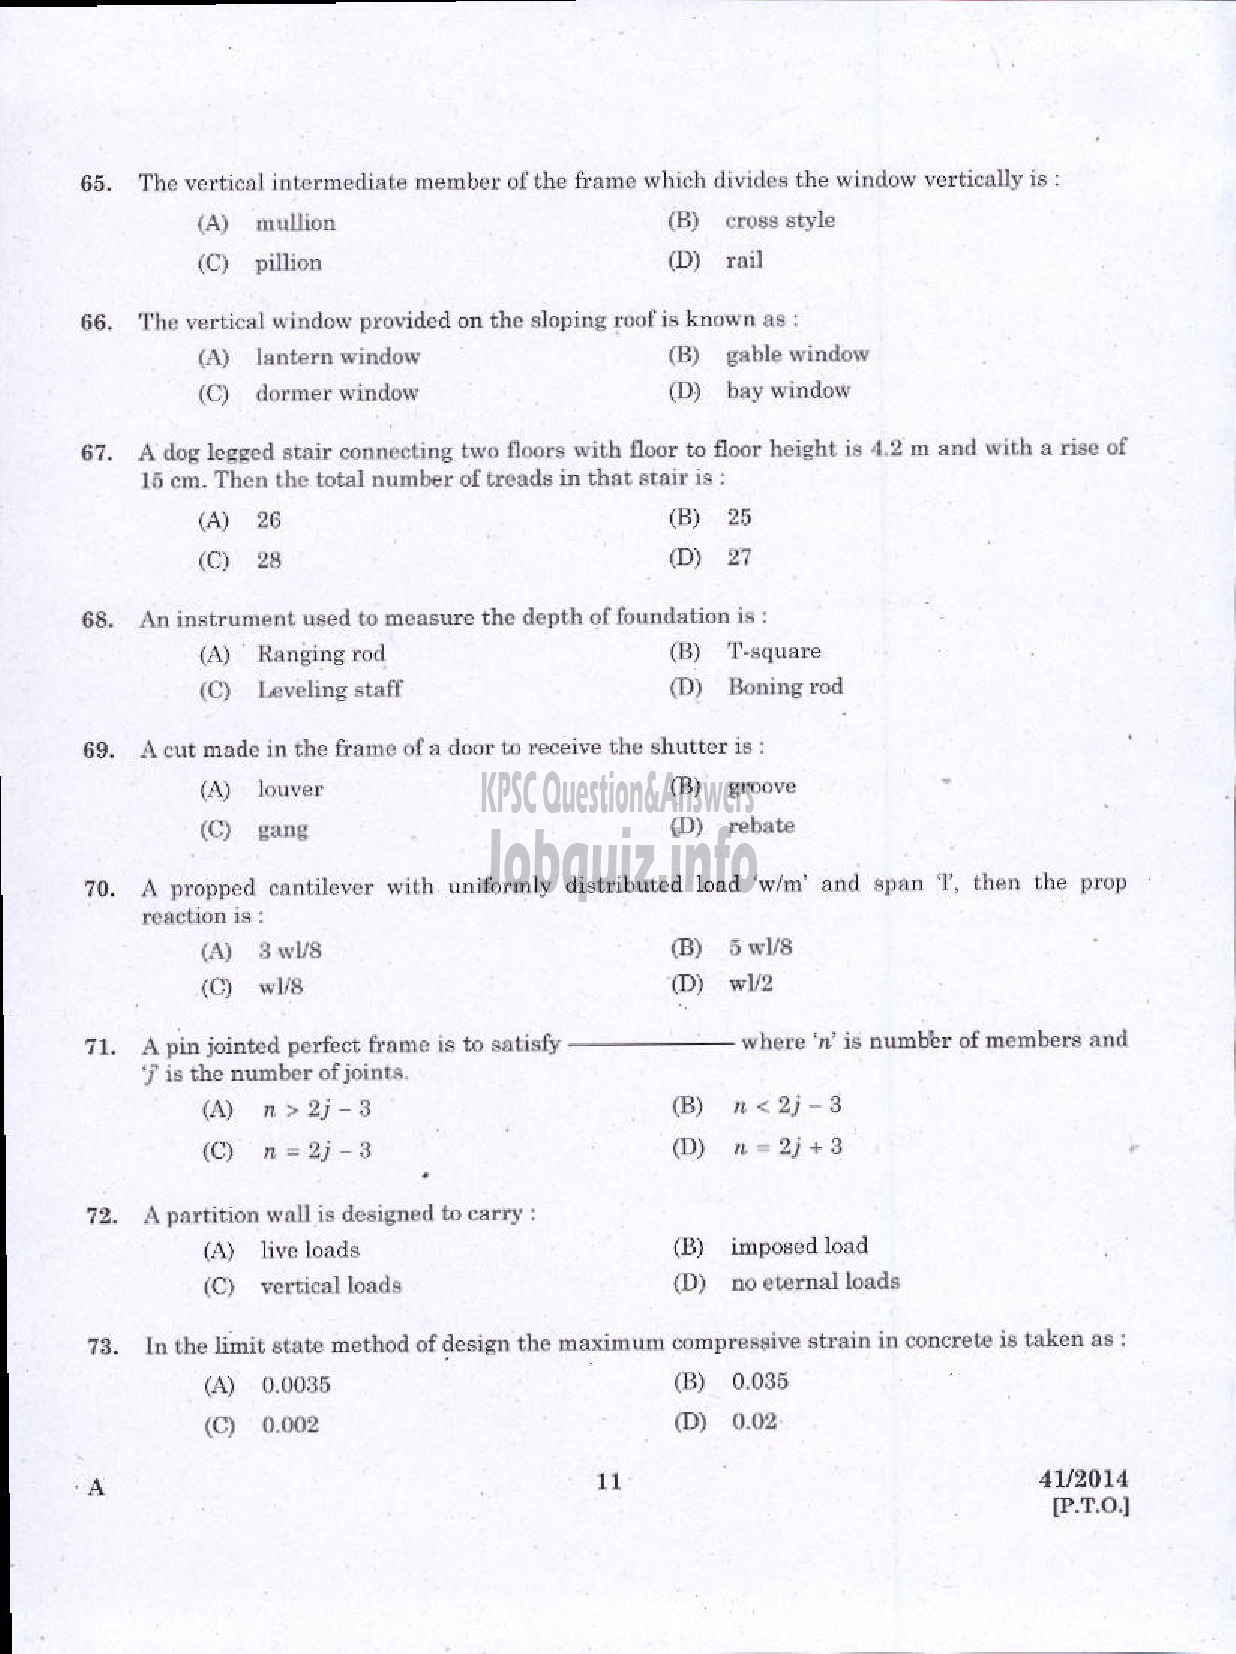 Kerala PSC Question Paper - WORK SUPERVISOR OVERSEER GRADE II DRAUGHTSMAN GRADE II-9